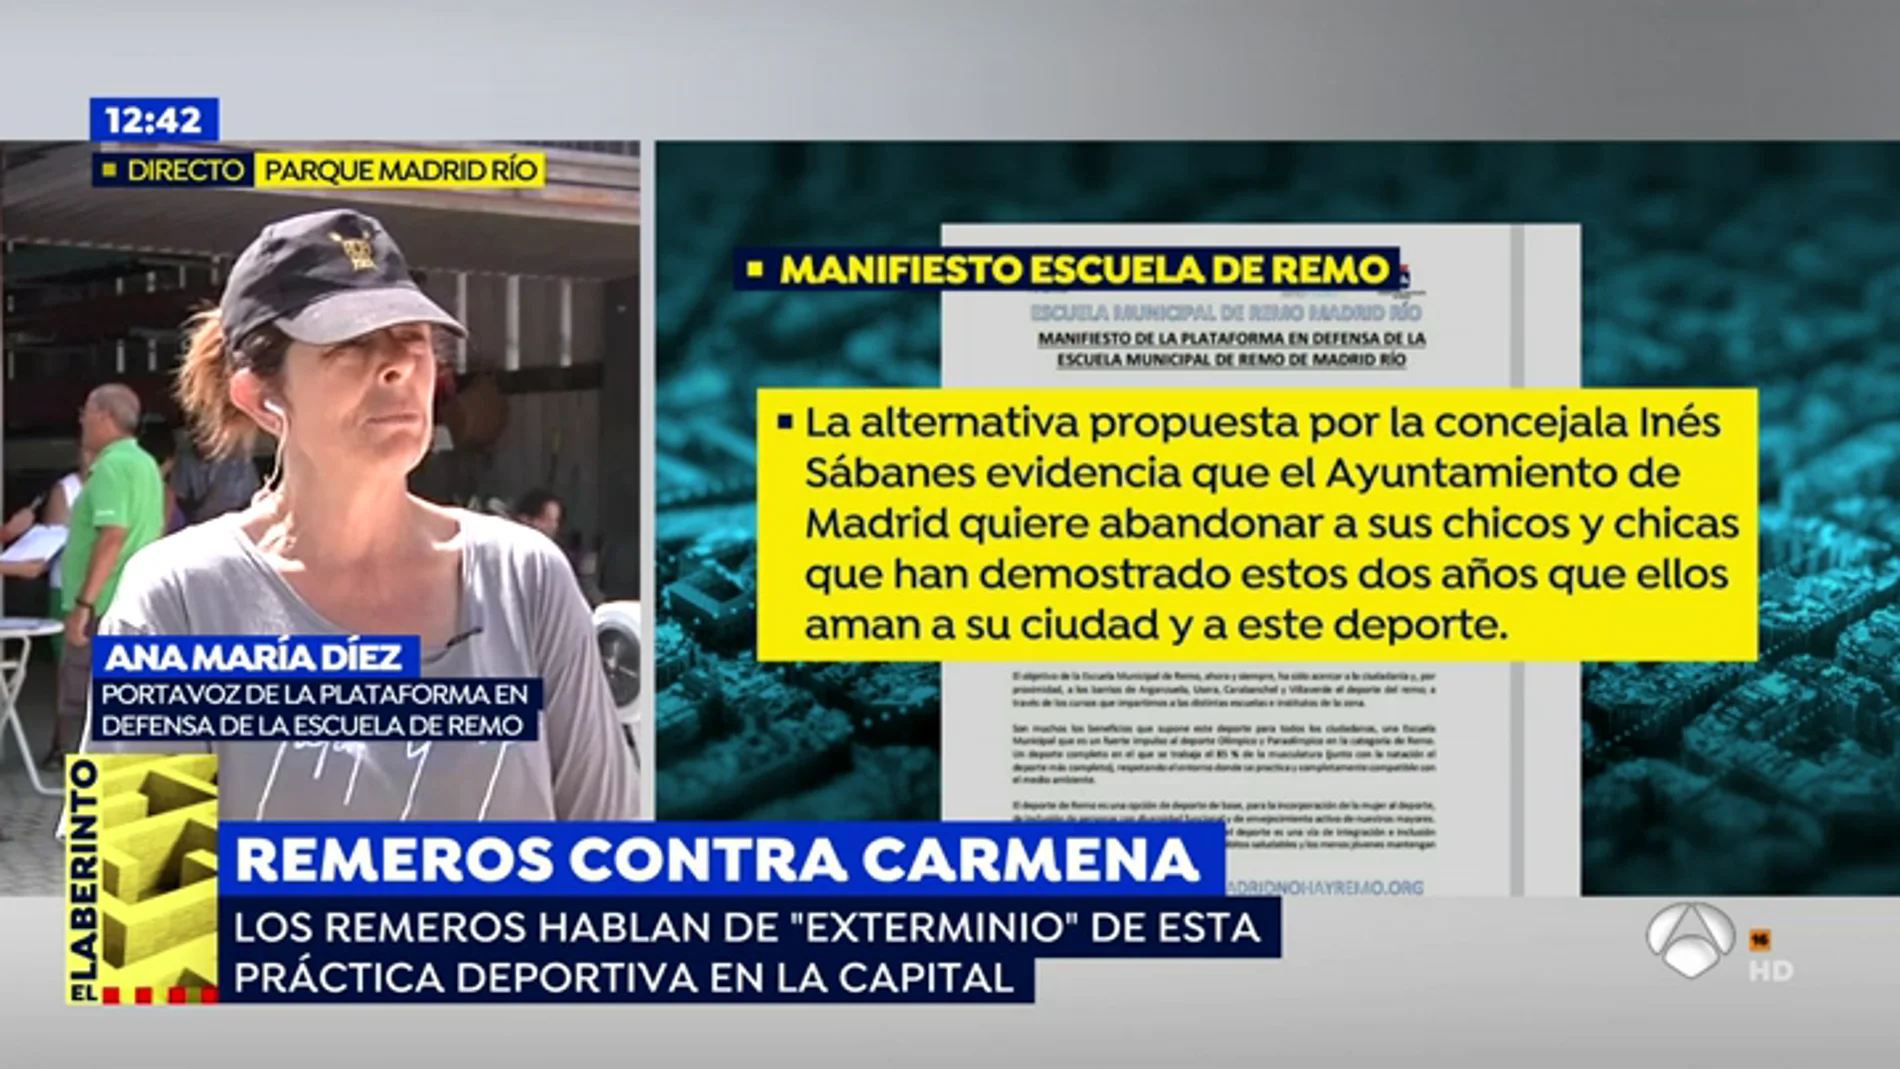 Portavoz de la defensa de la escuela de remo: "No nos vamos a mover aquí hasta que nos den una alternativa viable en el municipio de Madrid"